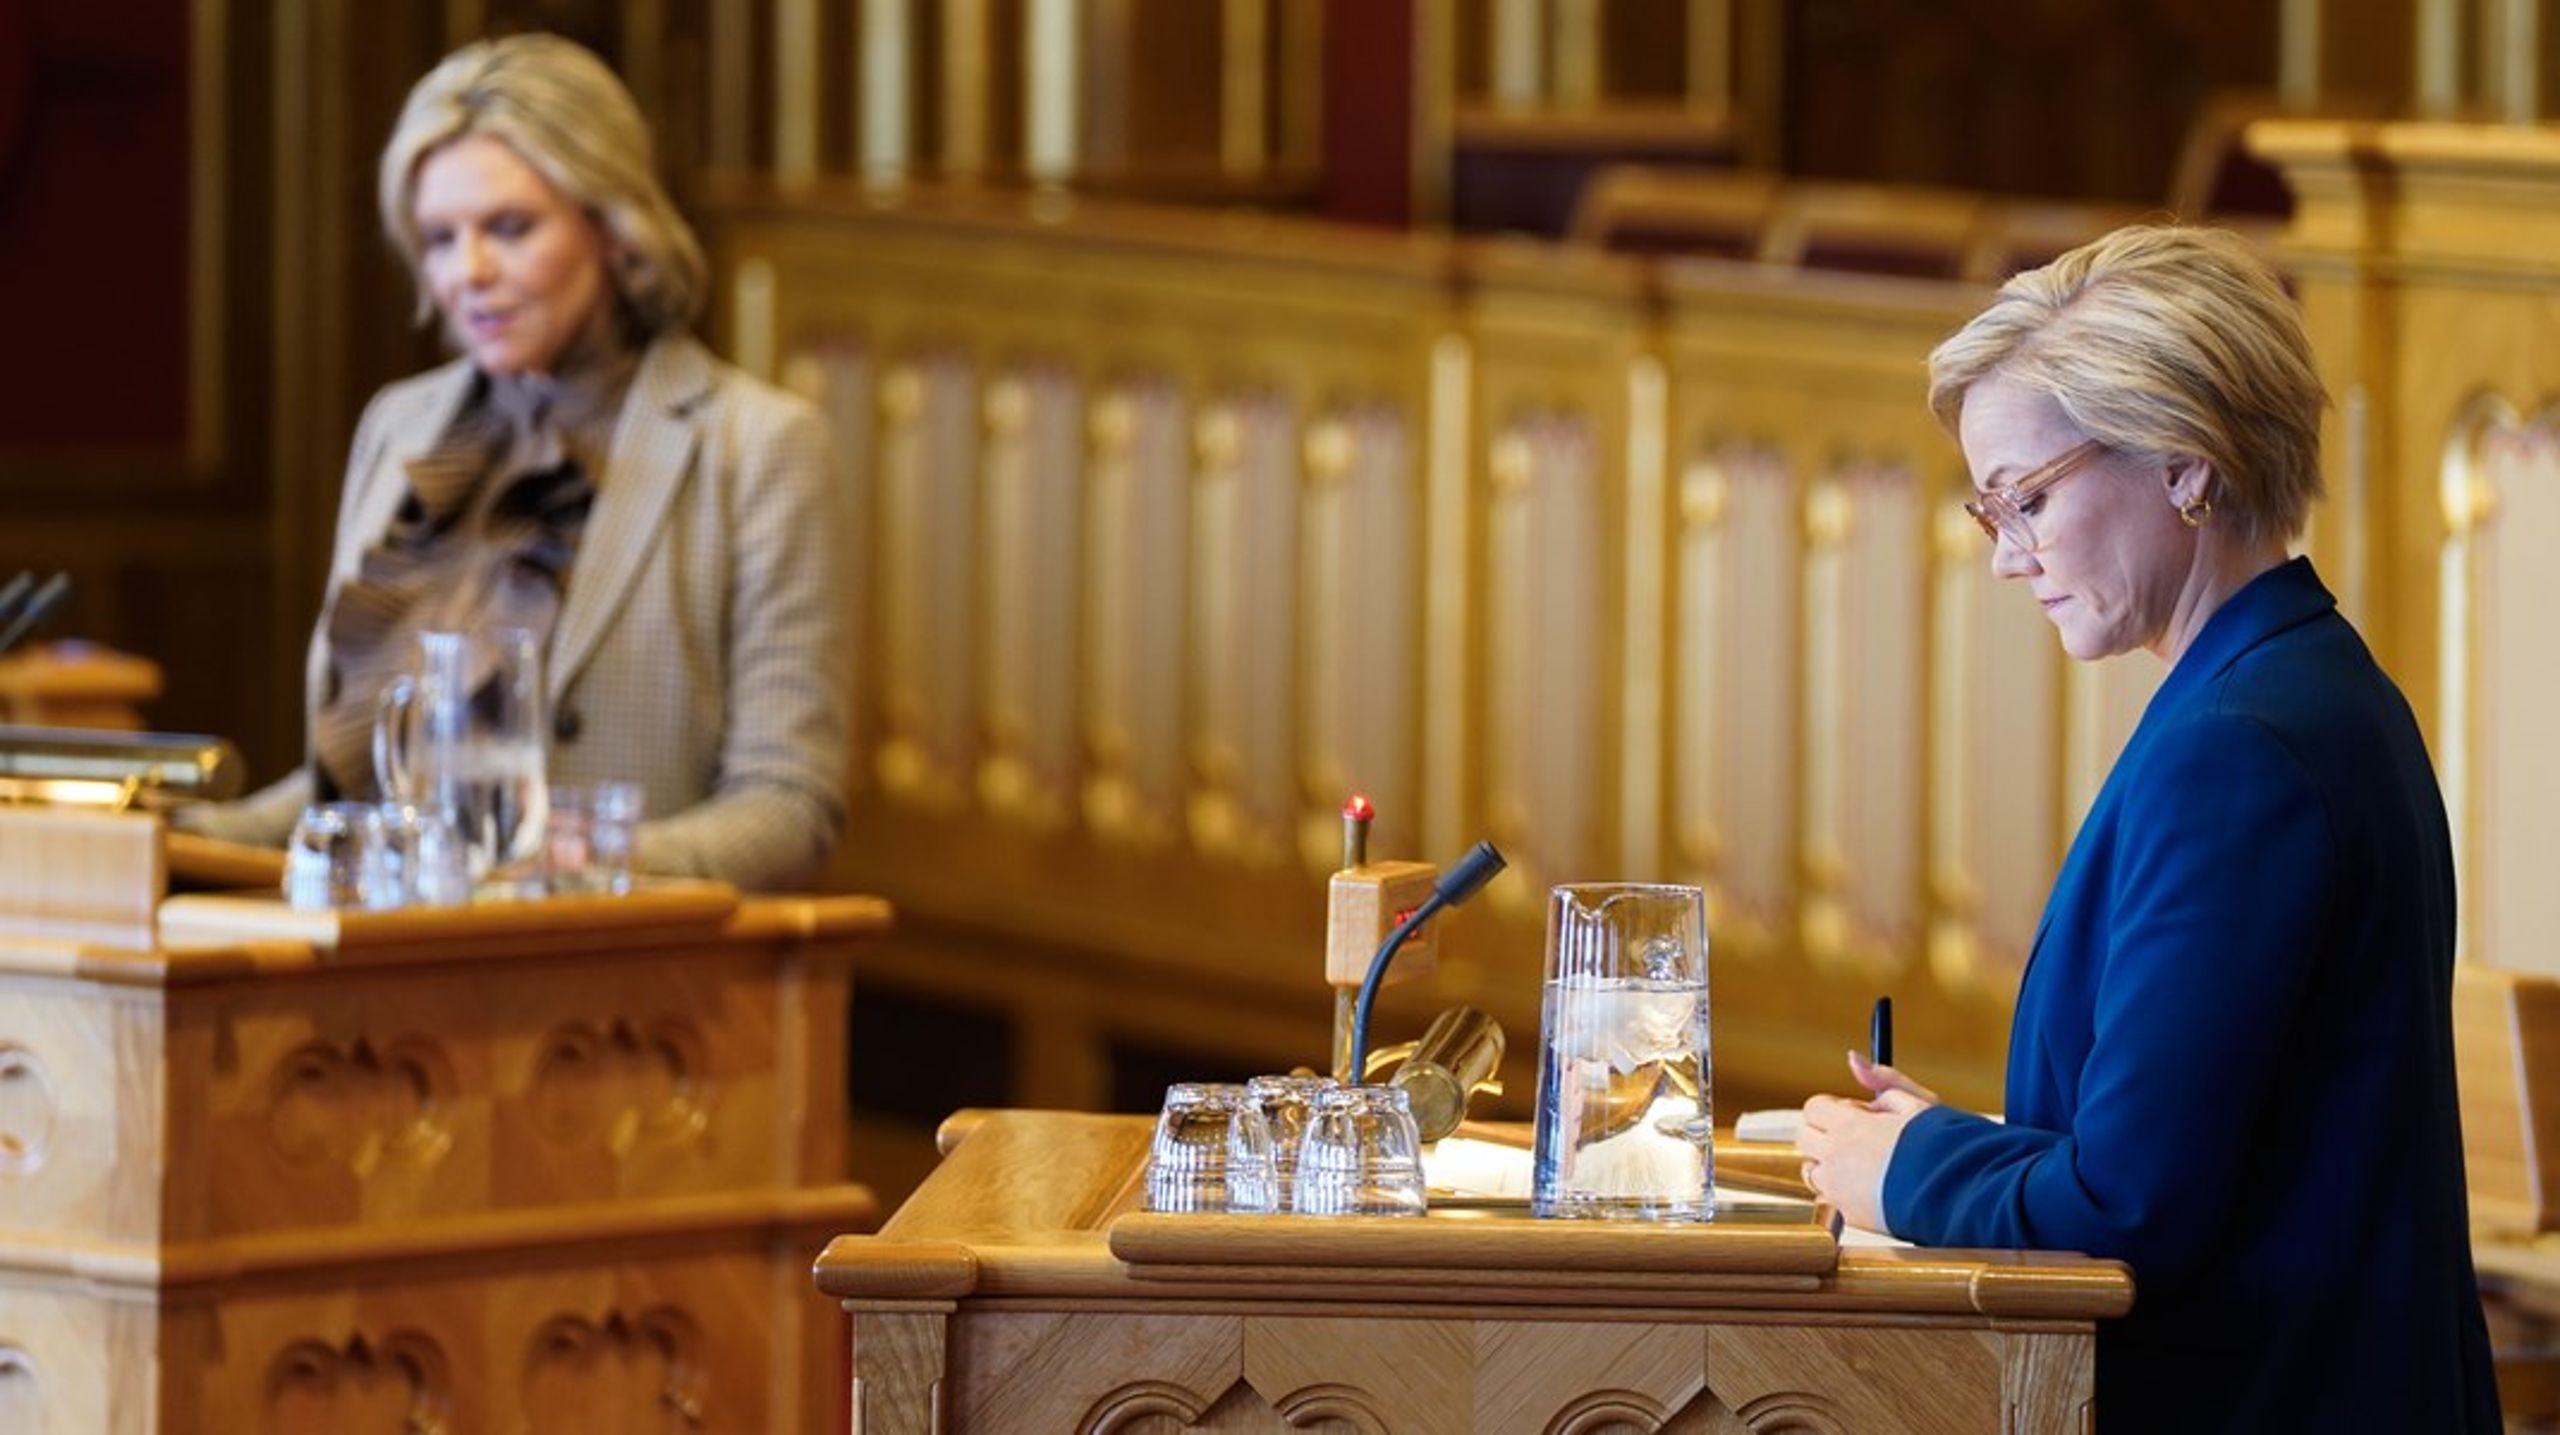 Helse- og omsorgsminister Ingvild Kjerkol kan ikke nekte Sylvi Listhaug og resten av Stortinget innsyn i kontrakten om Helseplattformen, mener to jusprofessorer. Her fra da Listhaug stilte spørsmål til statsråden om Helseplattformen onsdag.